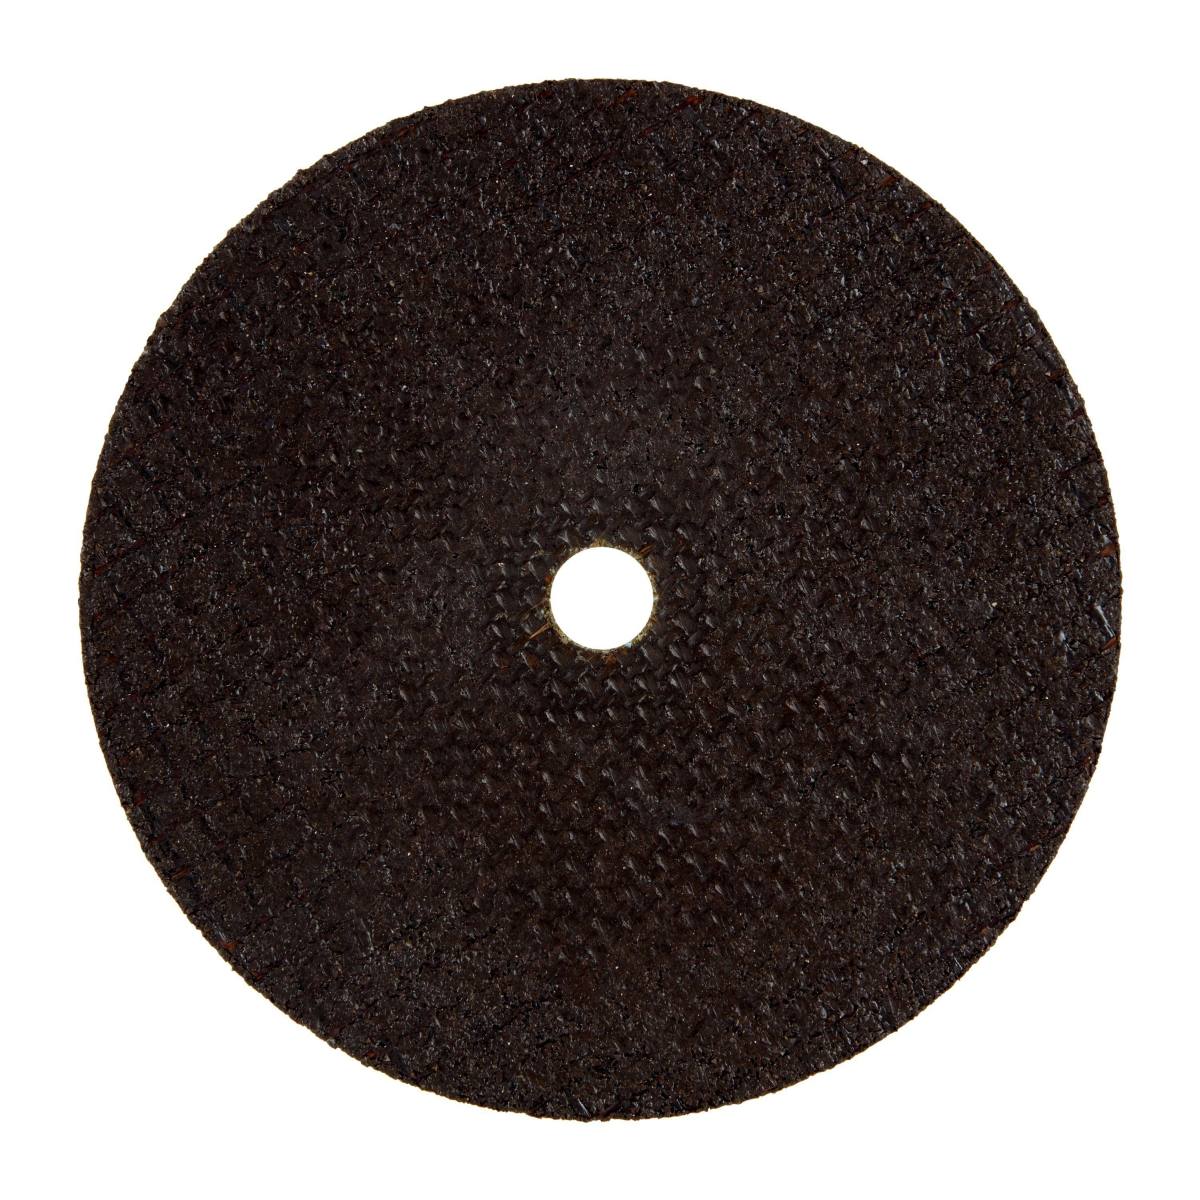 dischi da taglio 3M Cubitron II, 100 mm, foro 9,53 mm, spessore 1 mm